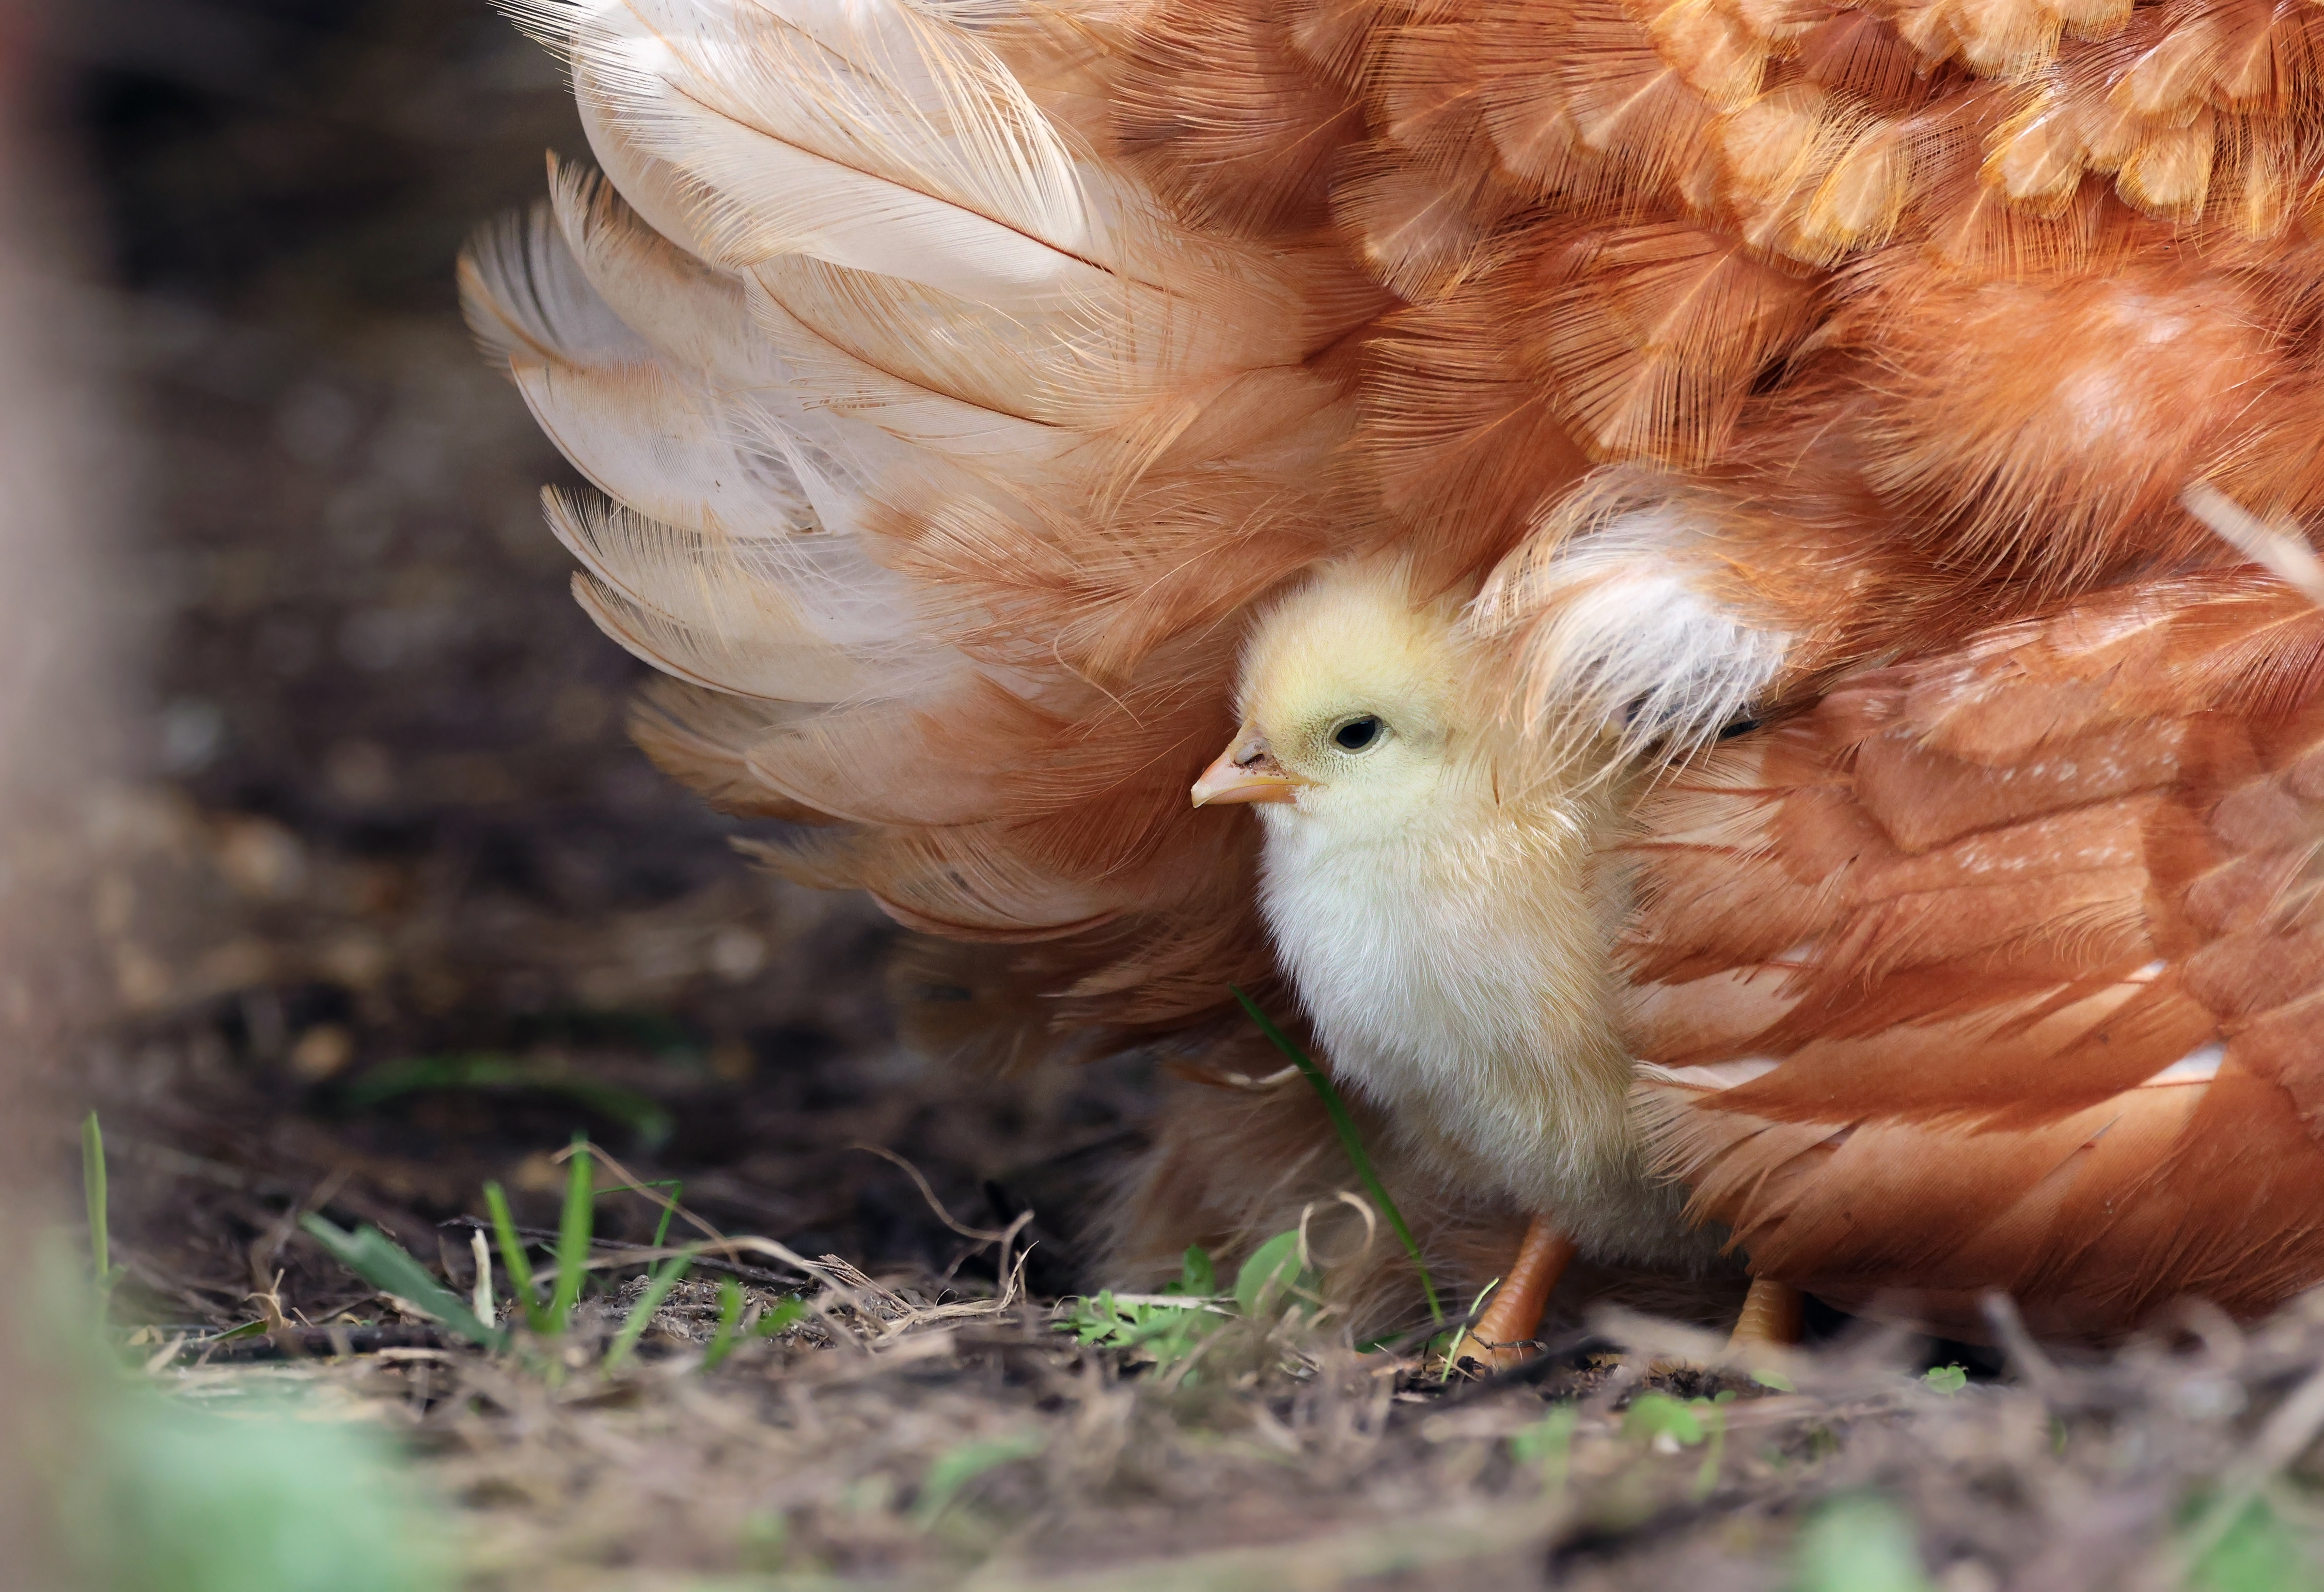 La vaccination est la principale méthode de prévention des épidémies de grippe aviaire chez les poulets. Toutefois, son efficacité est limitée car le virus de la grippe aviaire évolue rapidement. © Fernando, Adobe Stock